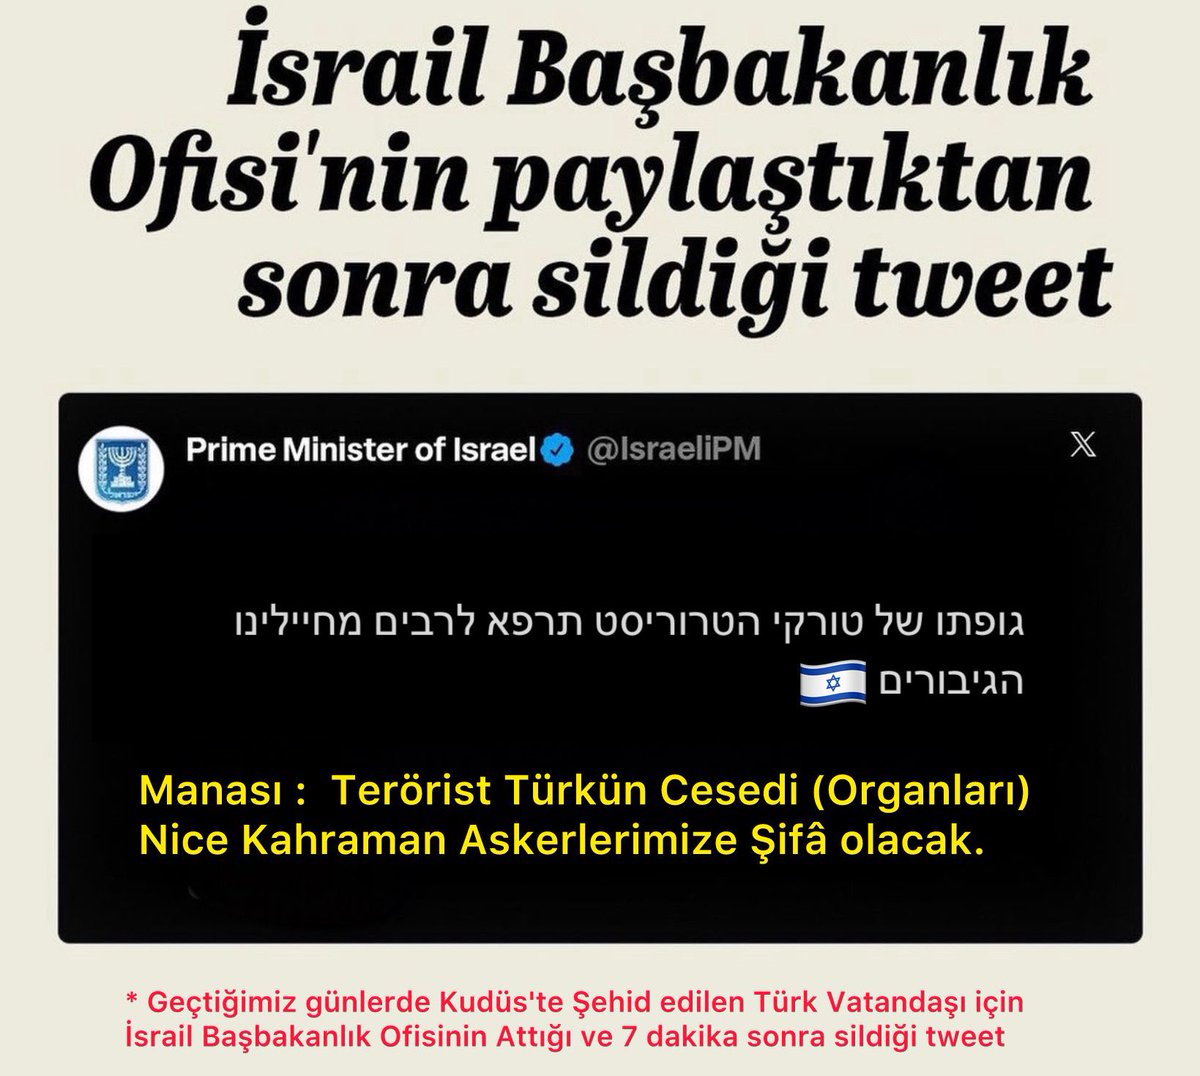 İsrail Başbakanlık Ofisi “Türk’ün cesedi, nice askerlerimize şifa olacak” diye bir tweet atıyor ve birkaç dakika sonra siliniyor.

Sonuç?
Kudüs Şehidi Hasan Saklanan’ın naaşından haber alınamıyor.